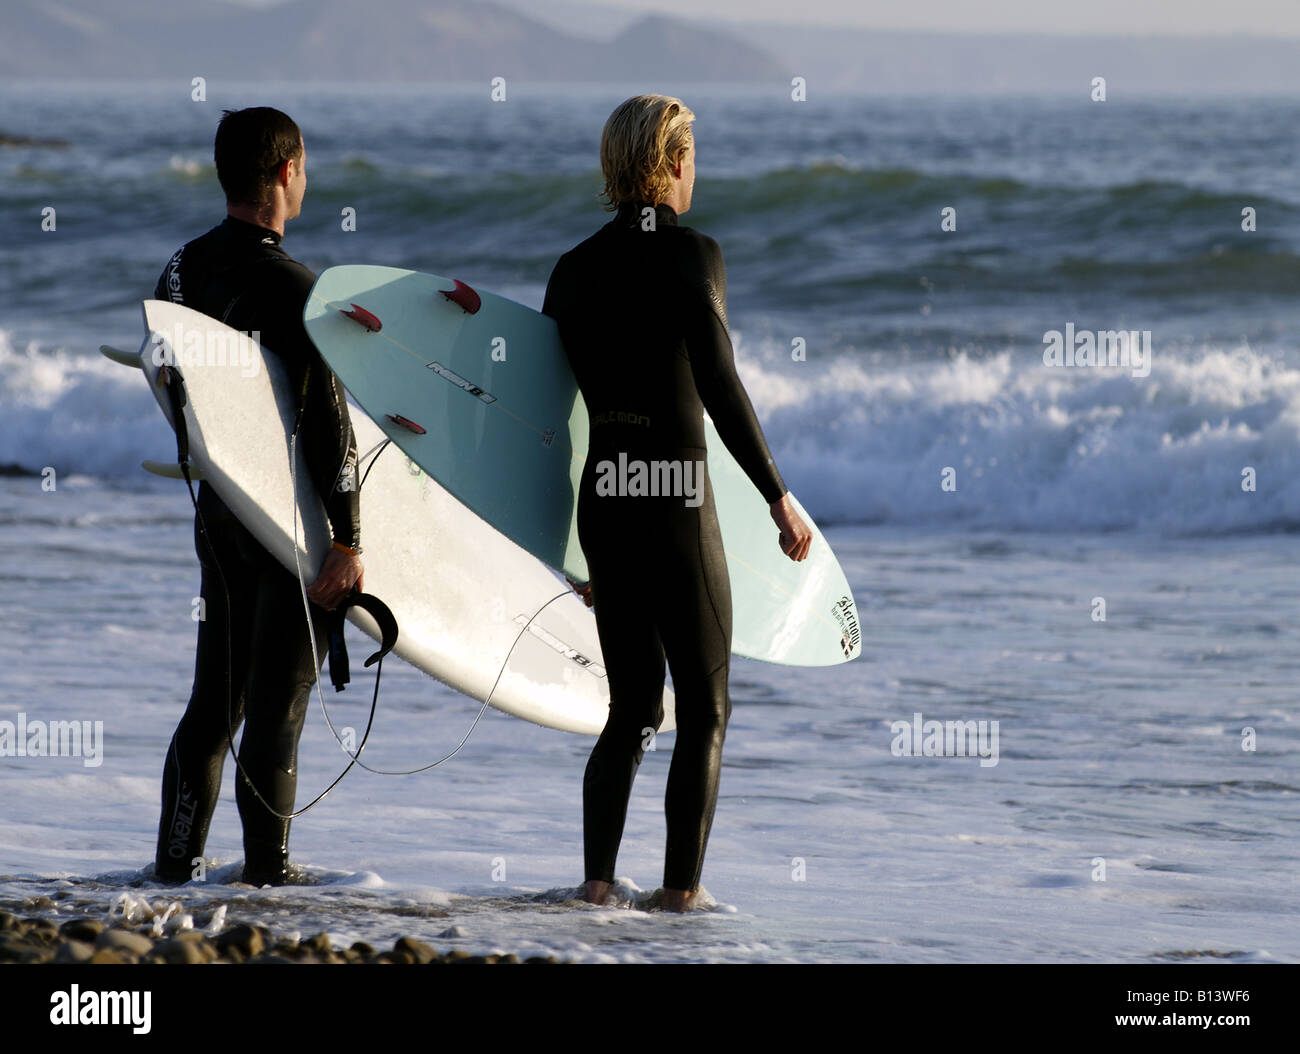 Deux surfeurs regardant les vagues en début de soirée à la plage de Crooklets, Bude, Cornwall, UK Banque D'Images